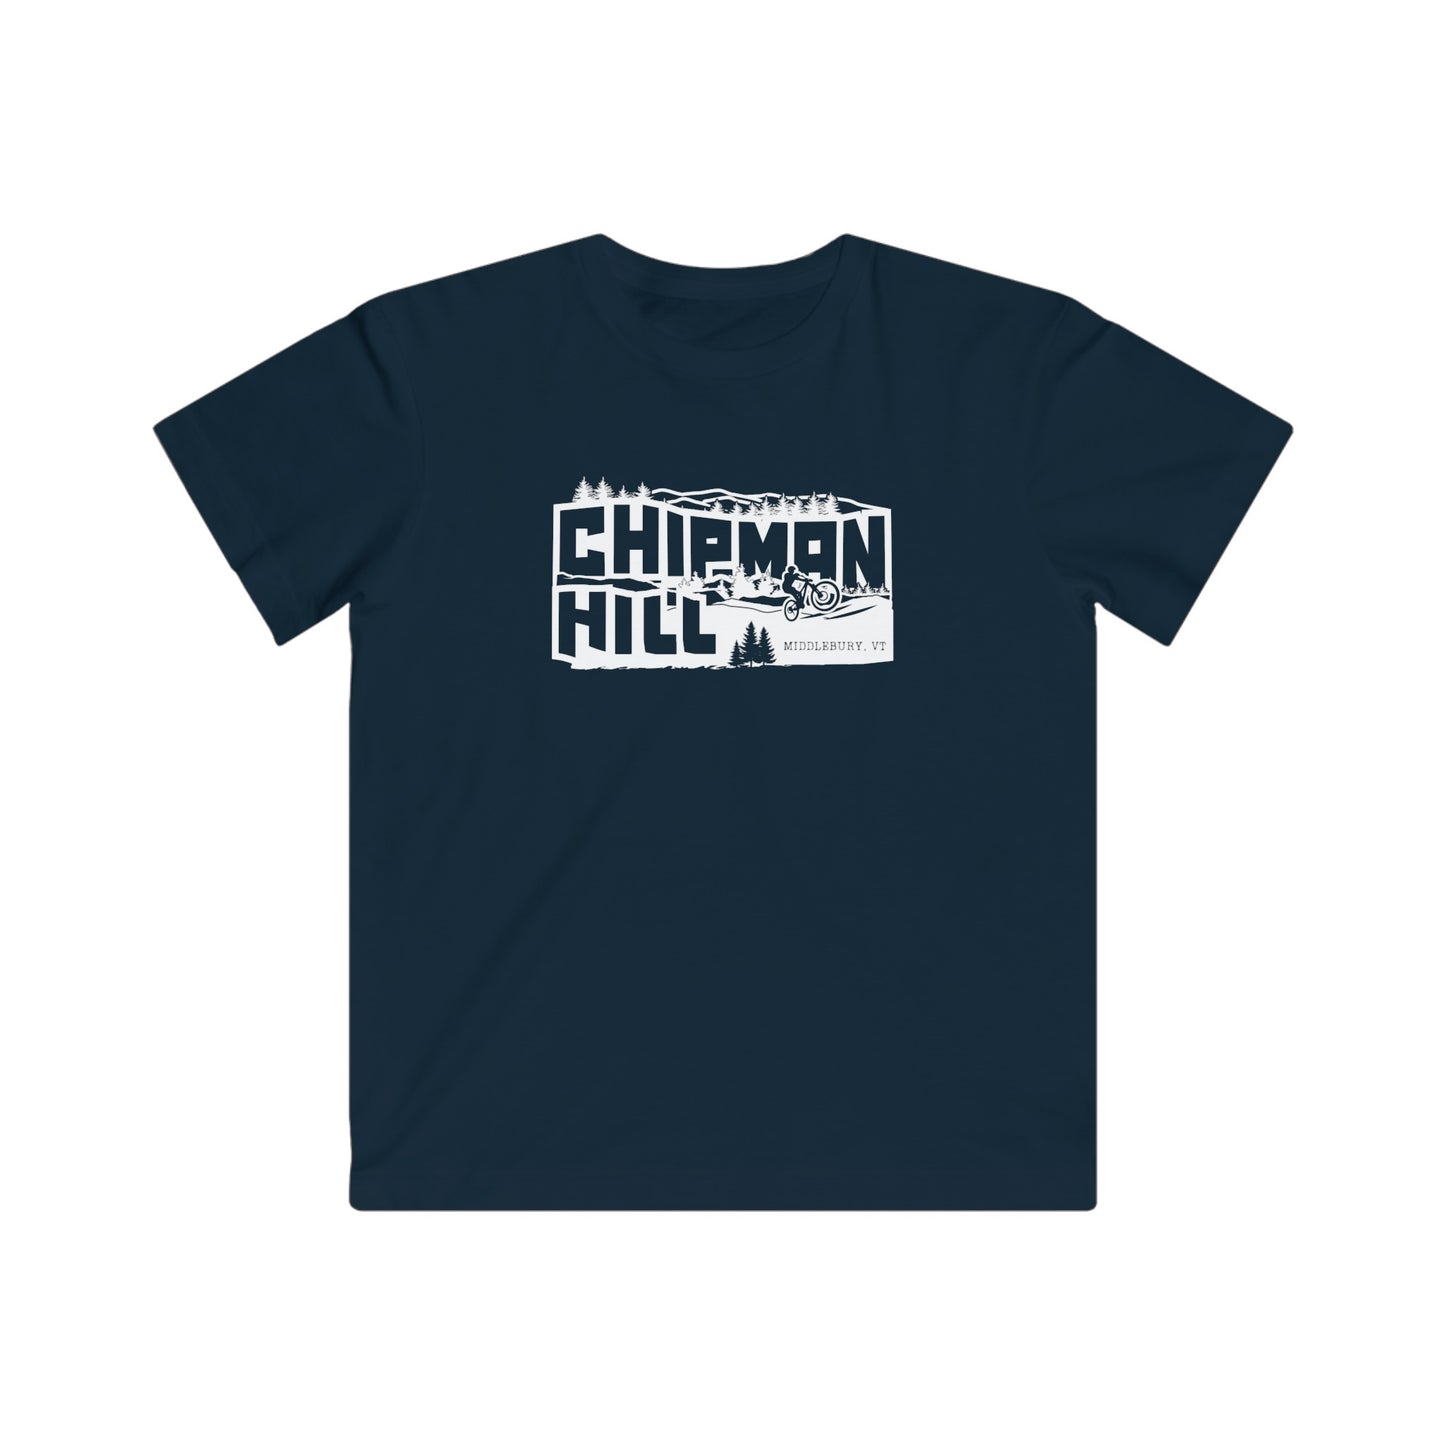 Chipman Hill Kid's T